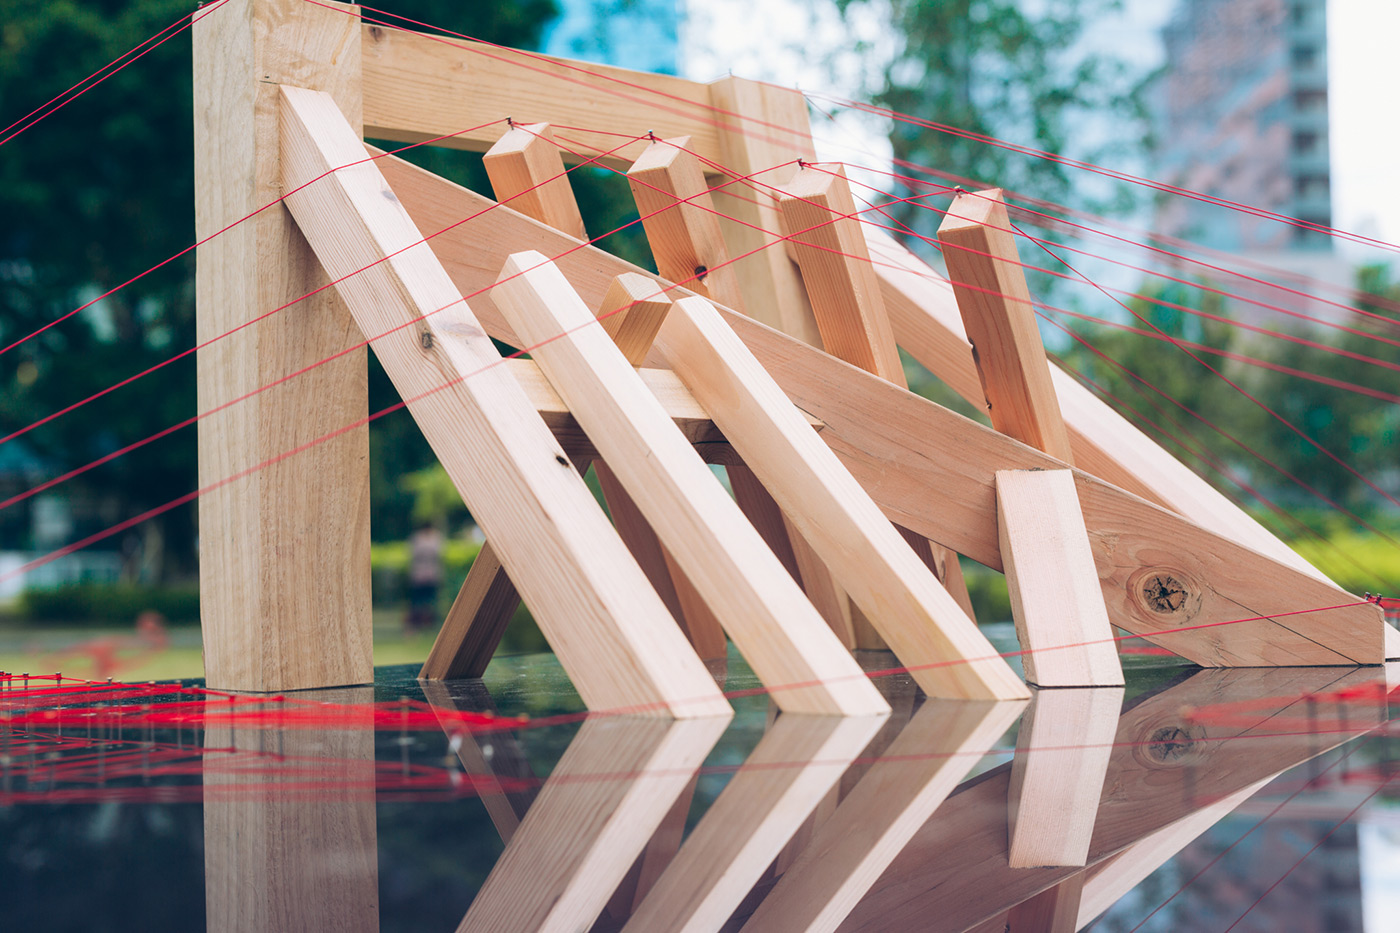 【淺橋】劃線放樣是傳統的專業技術，重點在於掌握複雜的三維木建築設計，超脫現代機械化標準，透過創作者獨到的匠心，在建造過程中賦予結構生命力和和象徵意義。  創作人：郭世敏  工匠